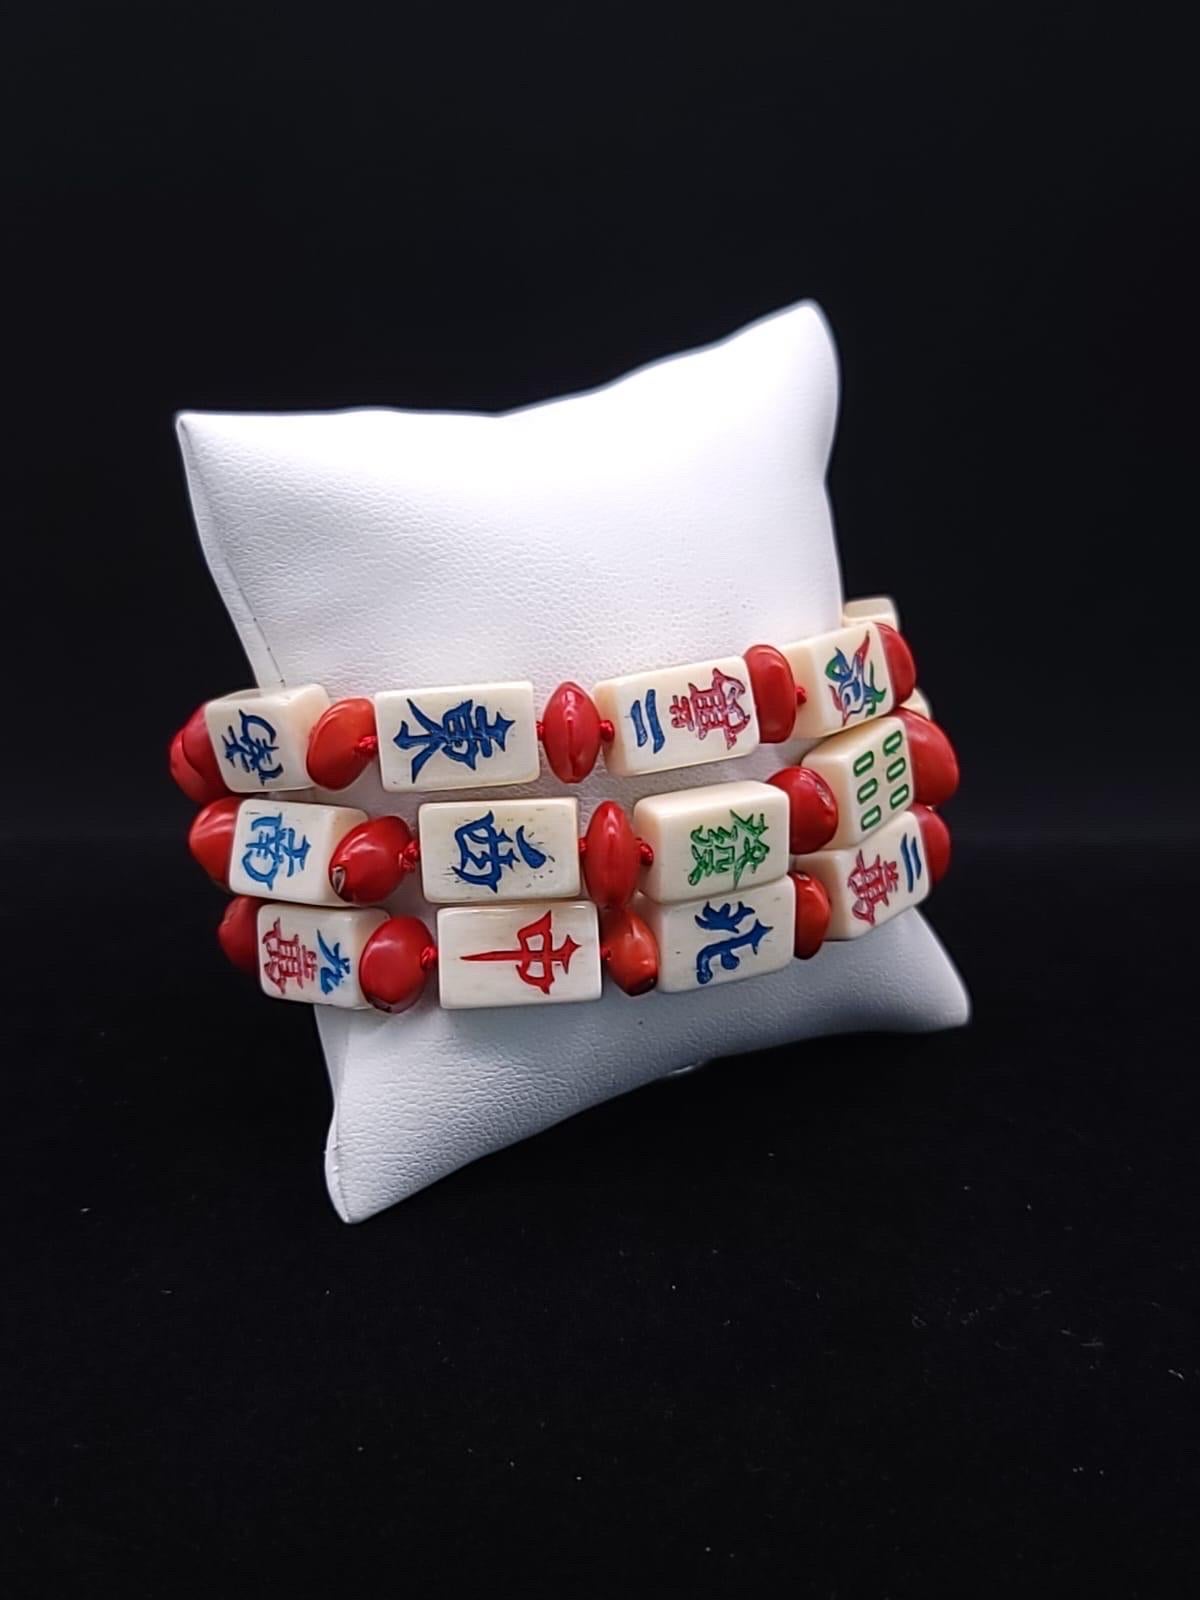 A.Jeschel Stunning mahjong tiles bracelet. 9